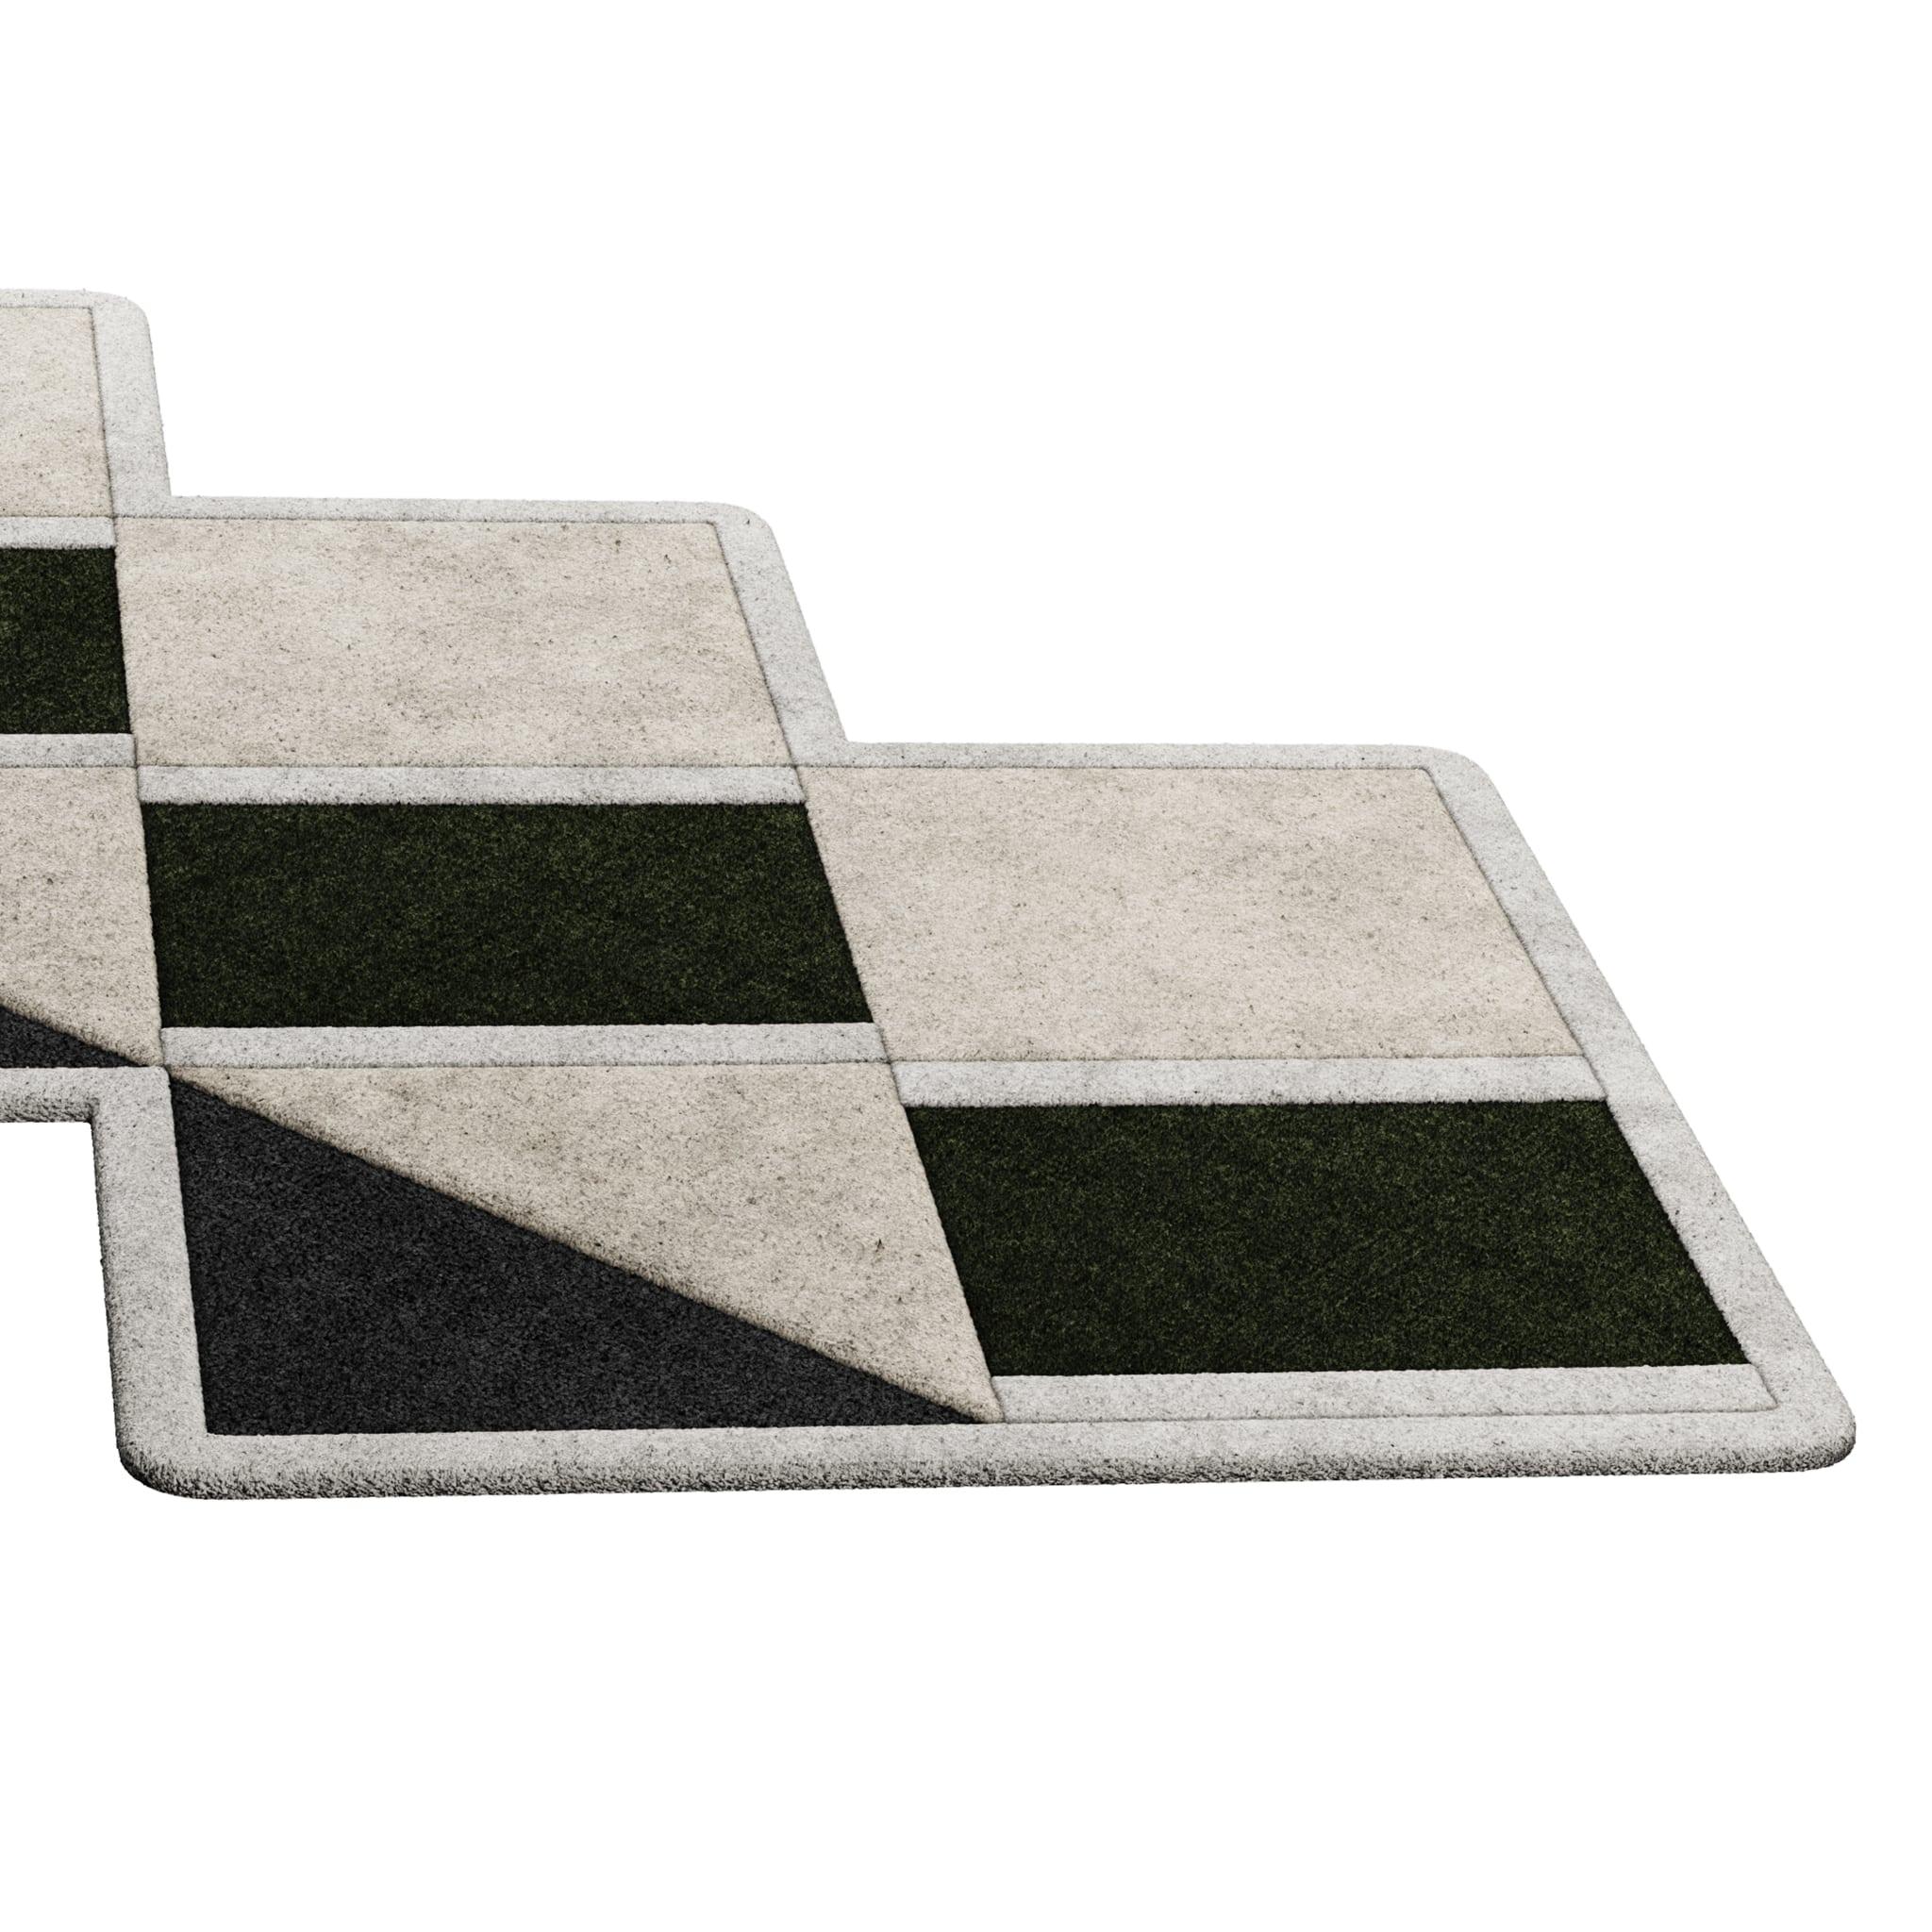 Tapis Retro #011 ist ein Retro-Teppich mit unregelmäßiger Form und monochromen Farbtönen. Inspiriert von architektonischen Linien, setzt dieser geometrische Teppich in jedem Wohnbereich ein Zeichen.

Mit einer 3D-Tufting-Technik, die Schnitt- und